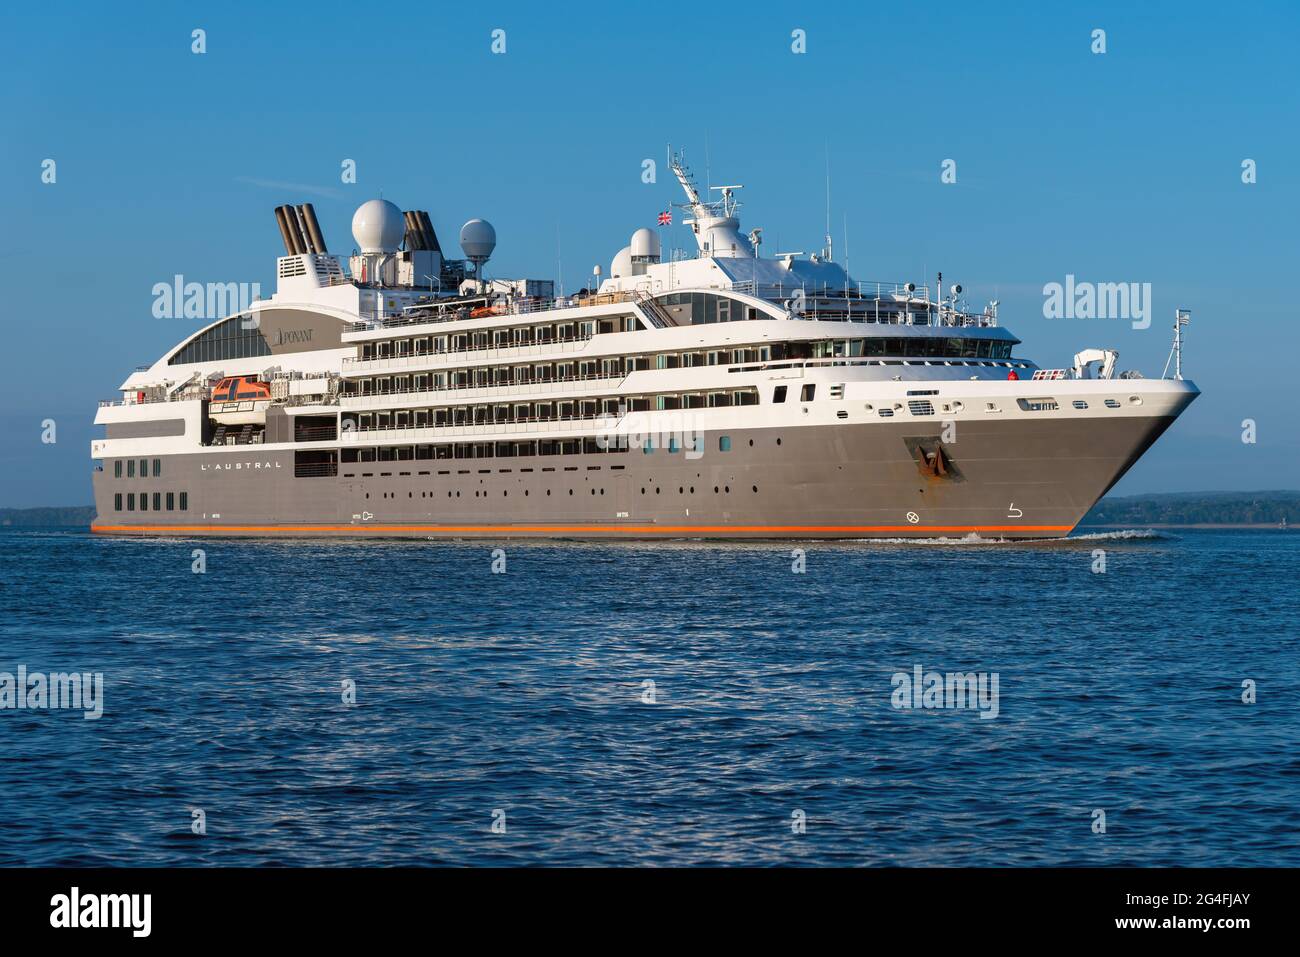 Le bateau de croisière boutique l'Austral, exploité par la Compagnie du Ponant française, arrive à Portsmouth - mai 2019 Banque D'Images